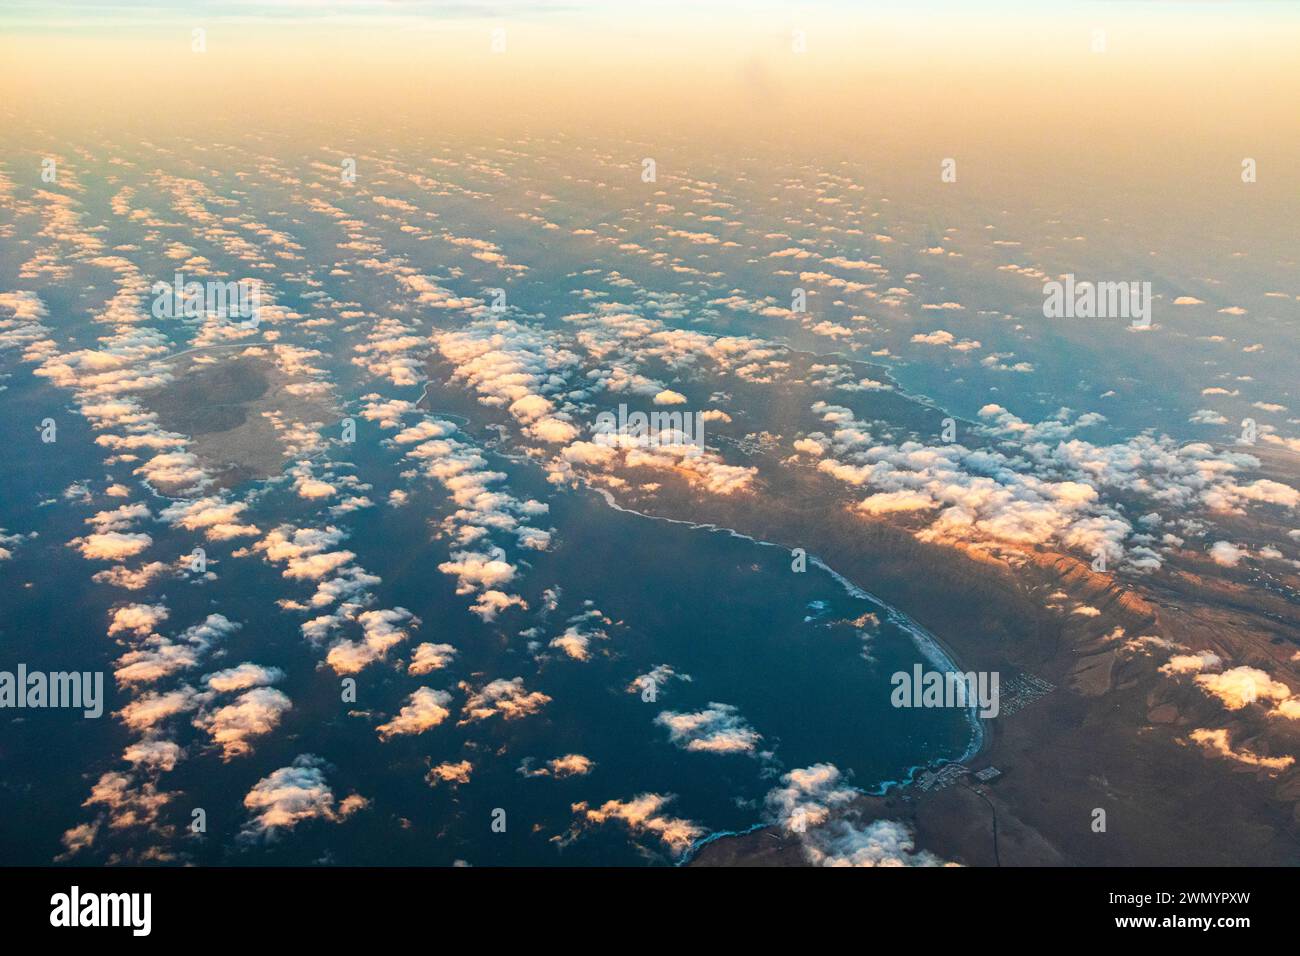 Caleta de Famara et la Bahia de Penedo sur l'île Canaries de Lanzarote, Espagne vue d'un avion de passage vers le coucher du soleil. Banque D'Images